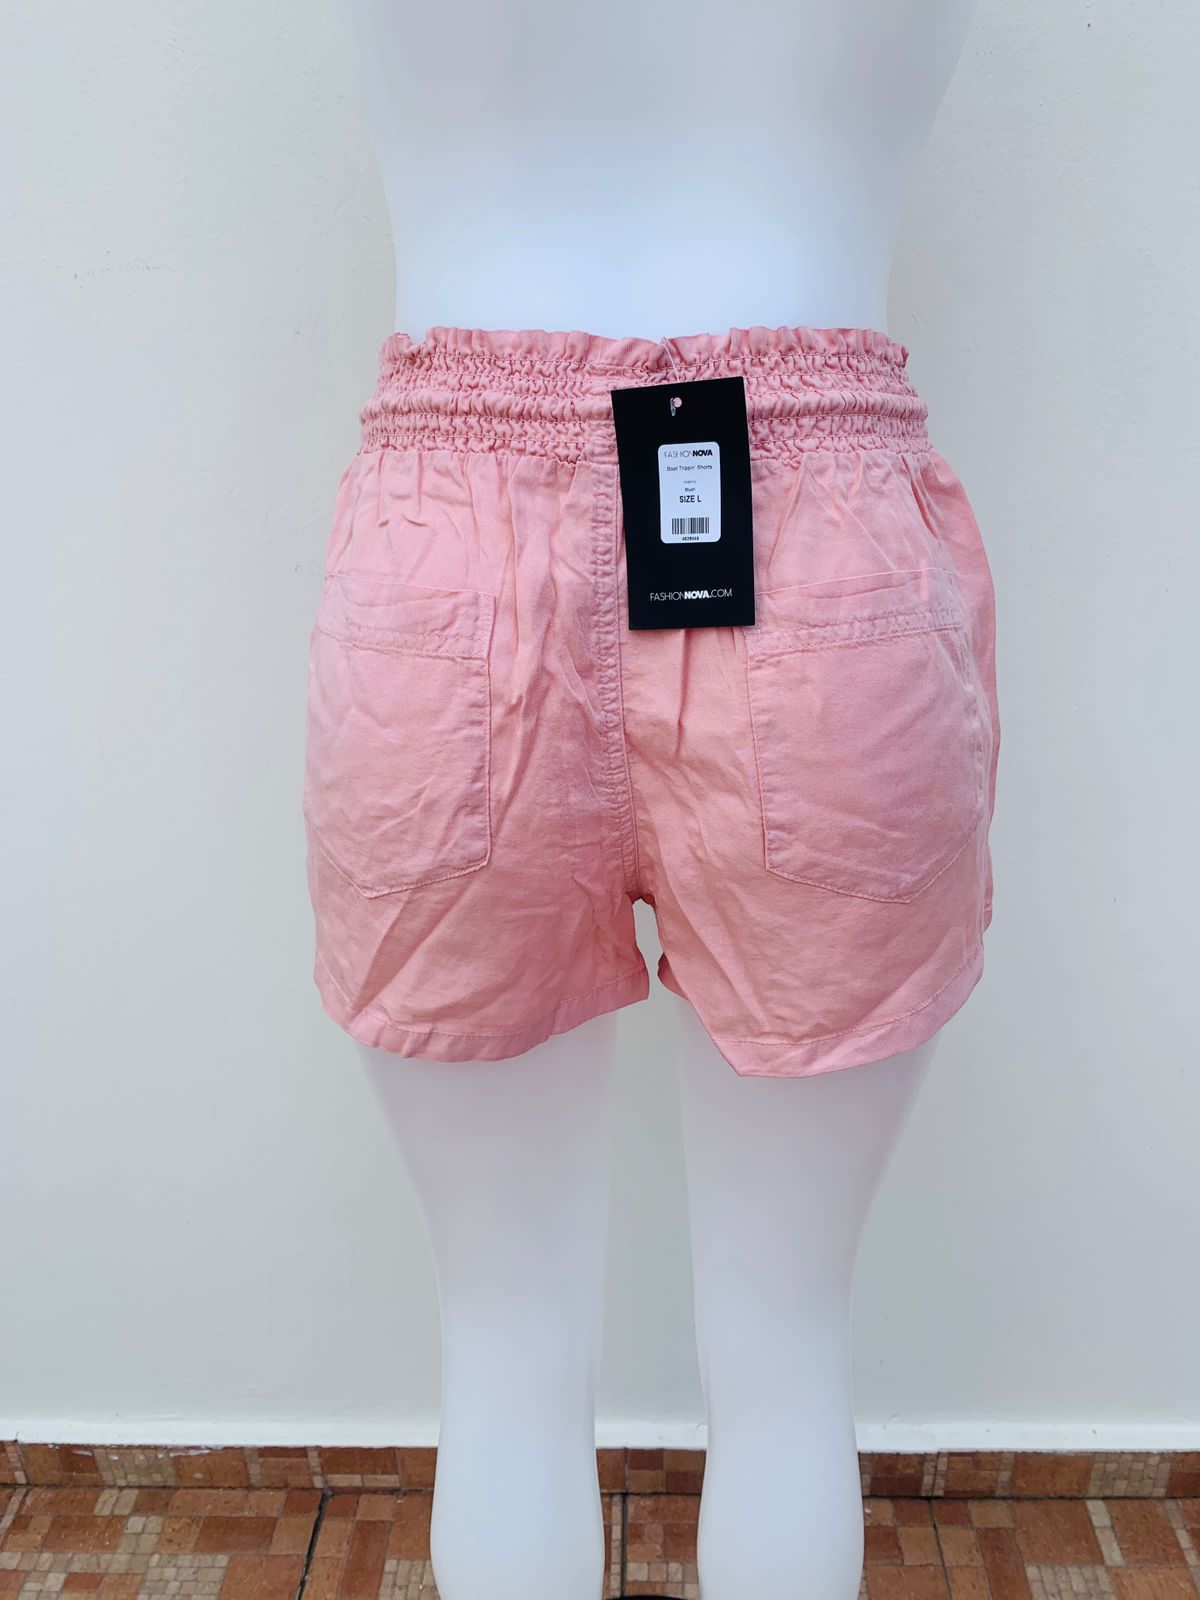 Short FASHION NOVA original, rosado opaco claro con cintura dobladilla y lazo ajustable en el centro estilo cordón de color crema.